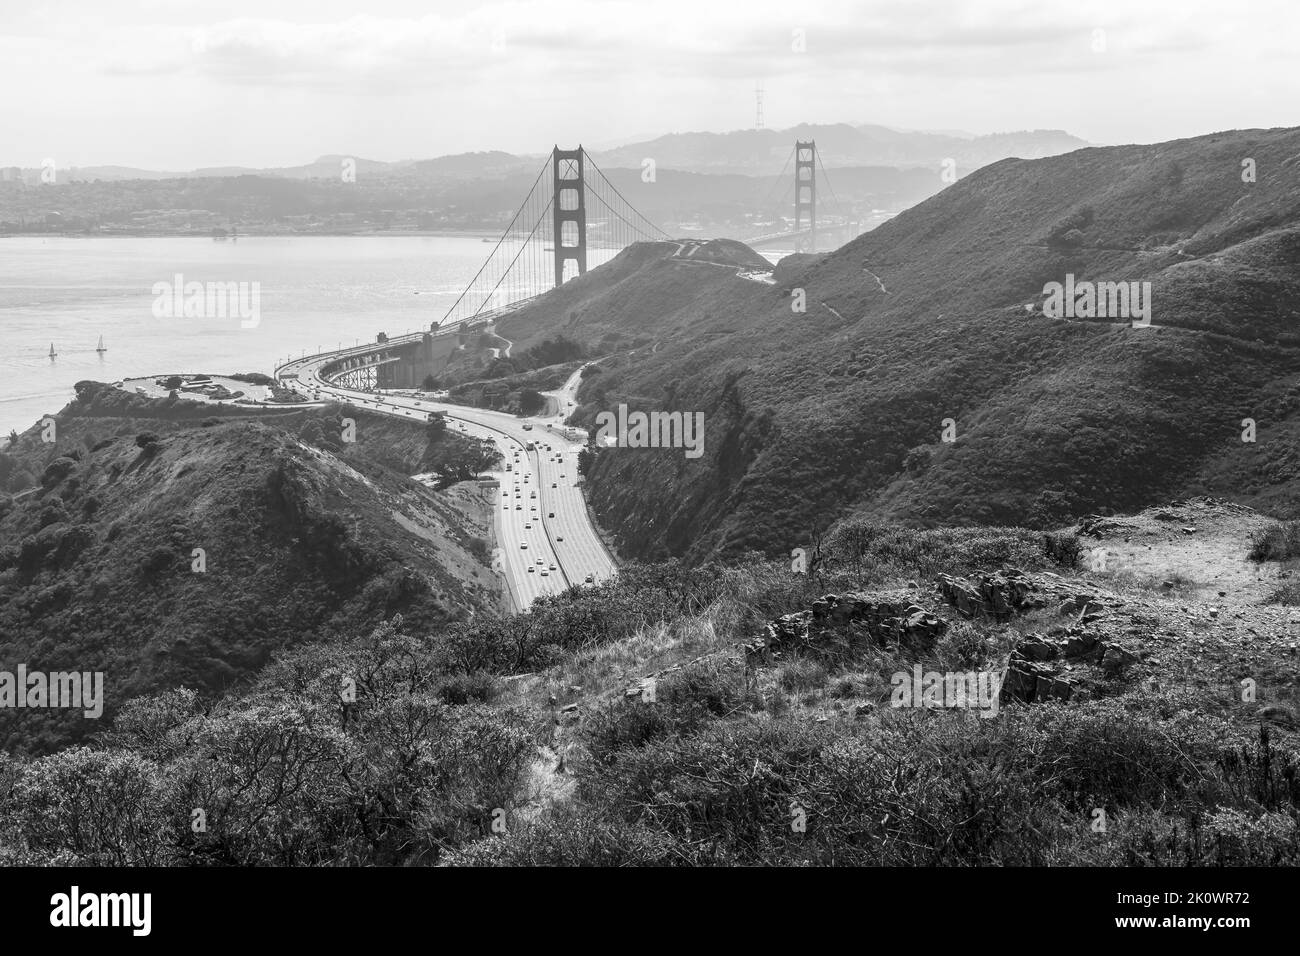 Le Golden Gate Bridge donne sur la vue depuis Marin Headlands Sausalito, Californie Banque D'Images